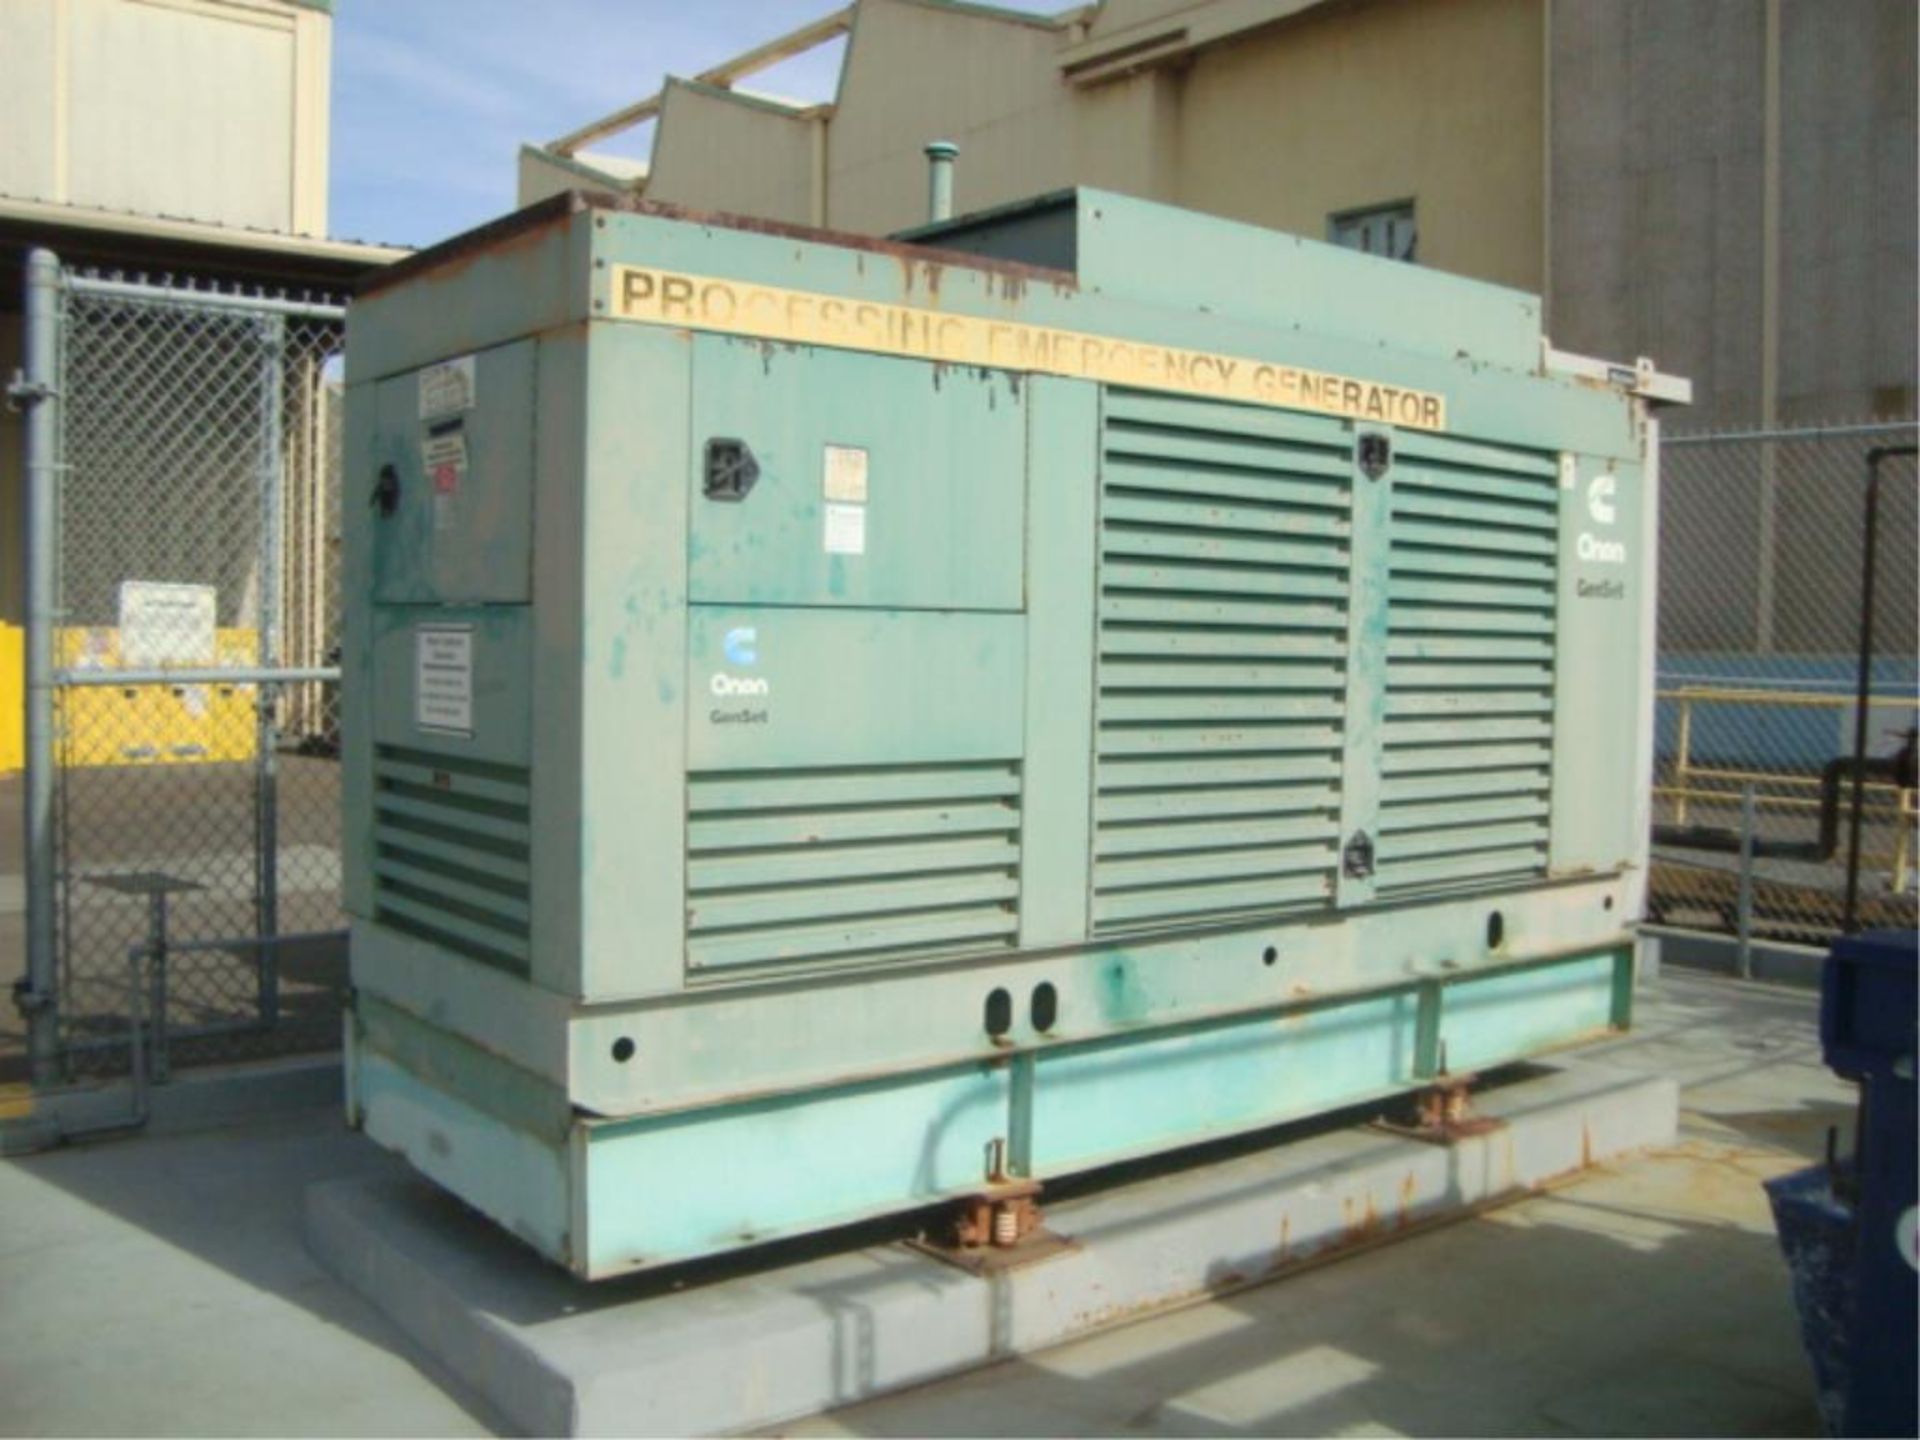 300kW Diesel Generator